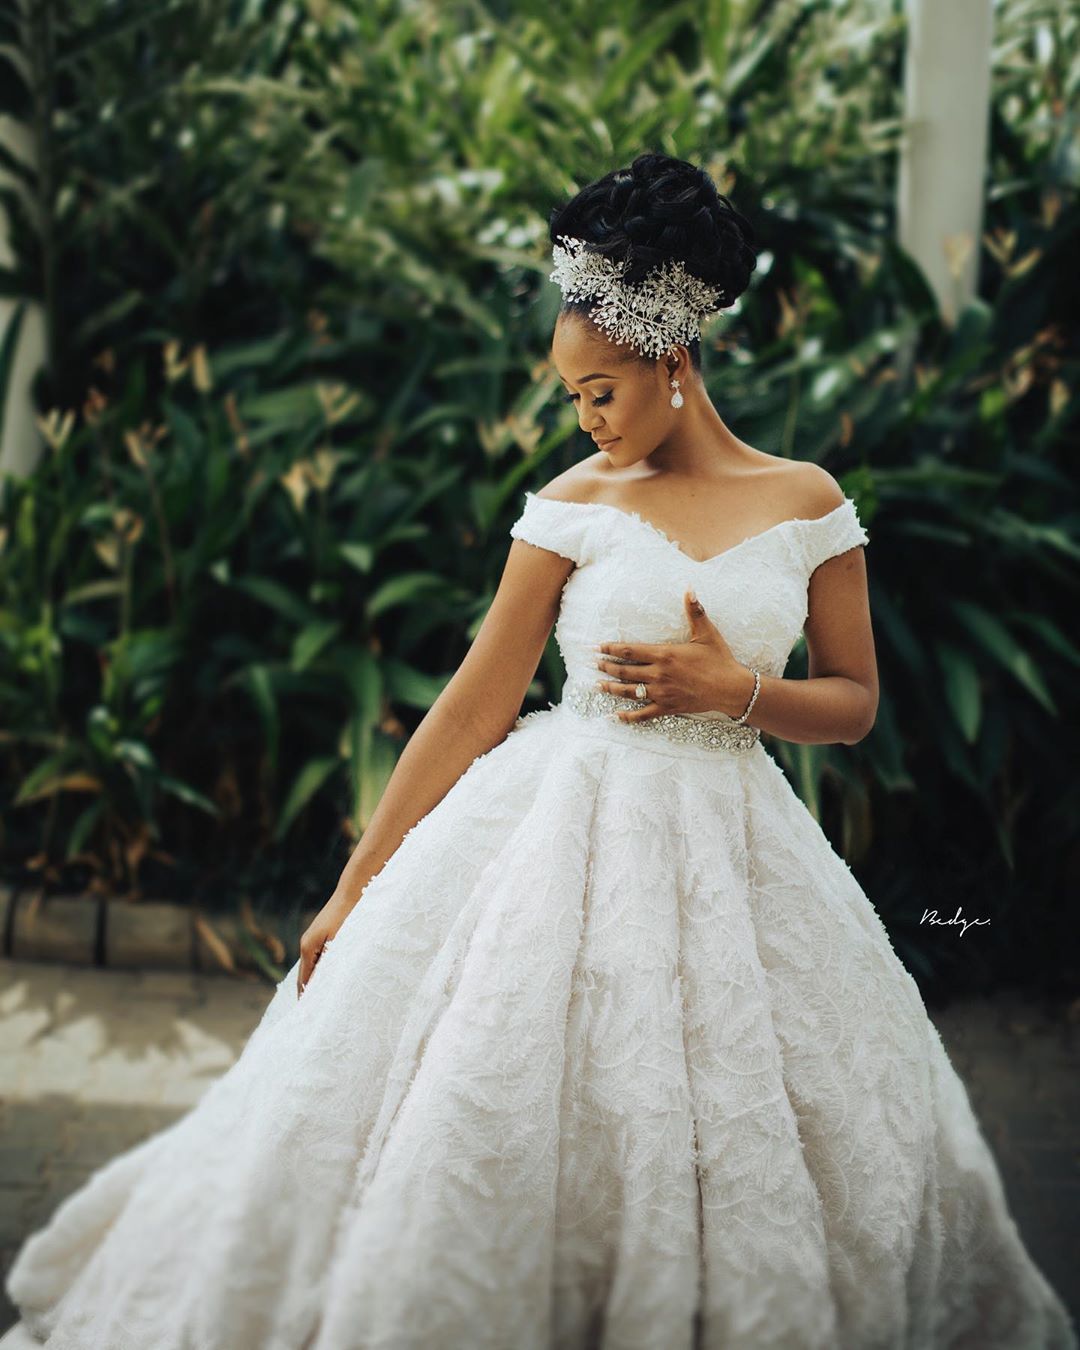 Vestido de novia con hombros descubiertos: encuentra el modelo perfecto para ti